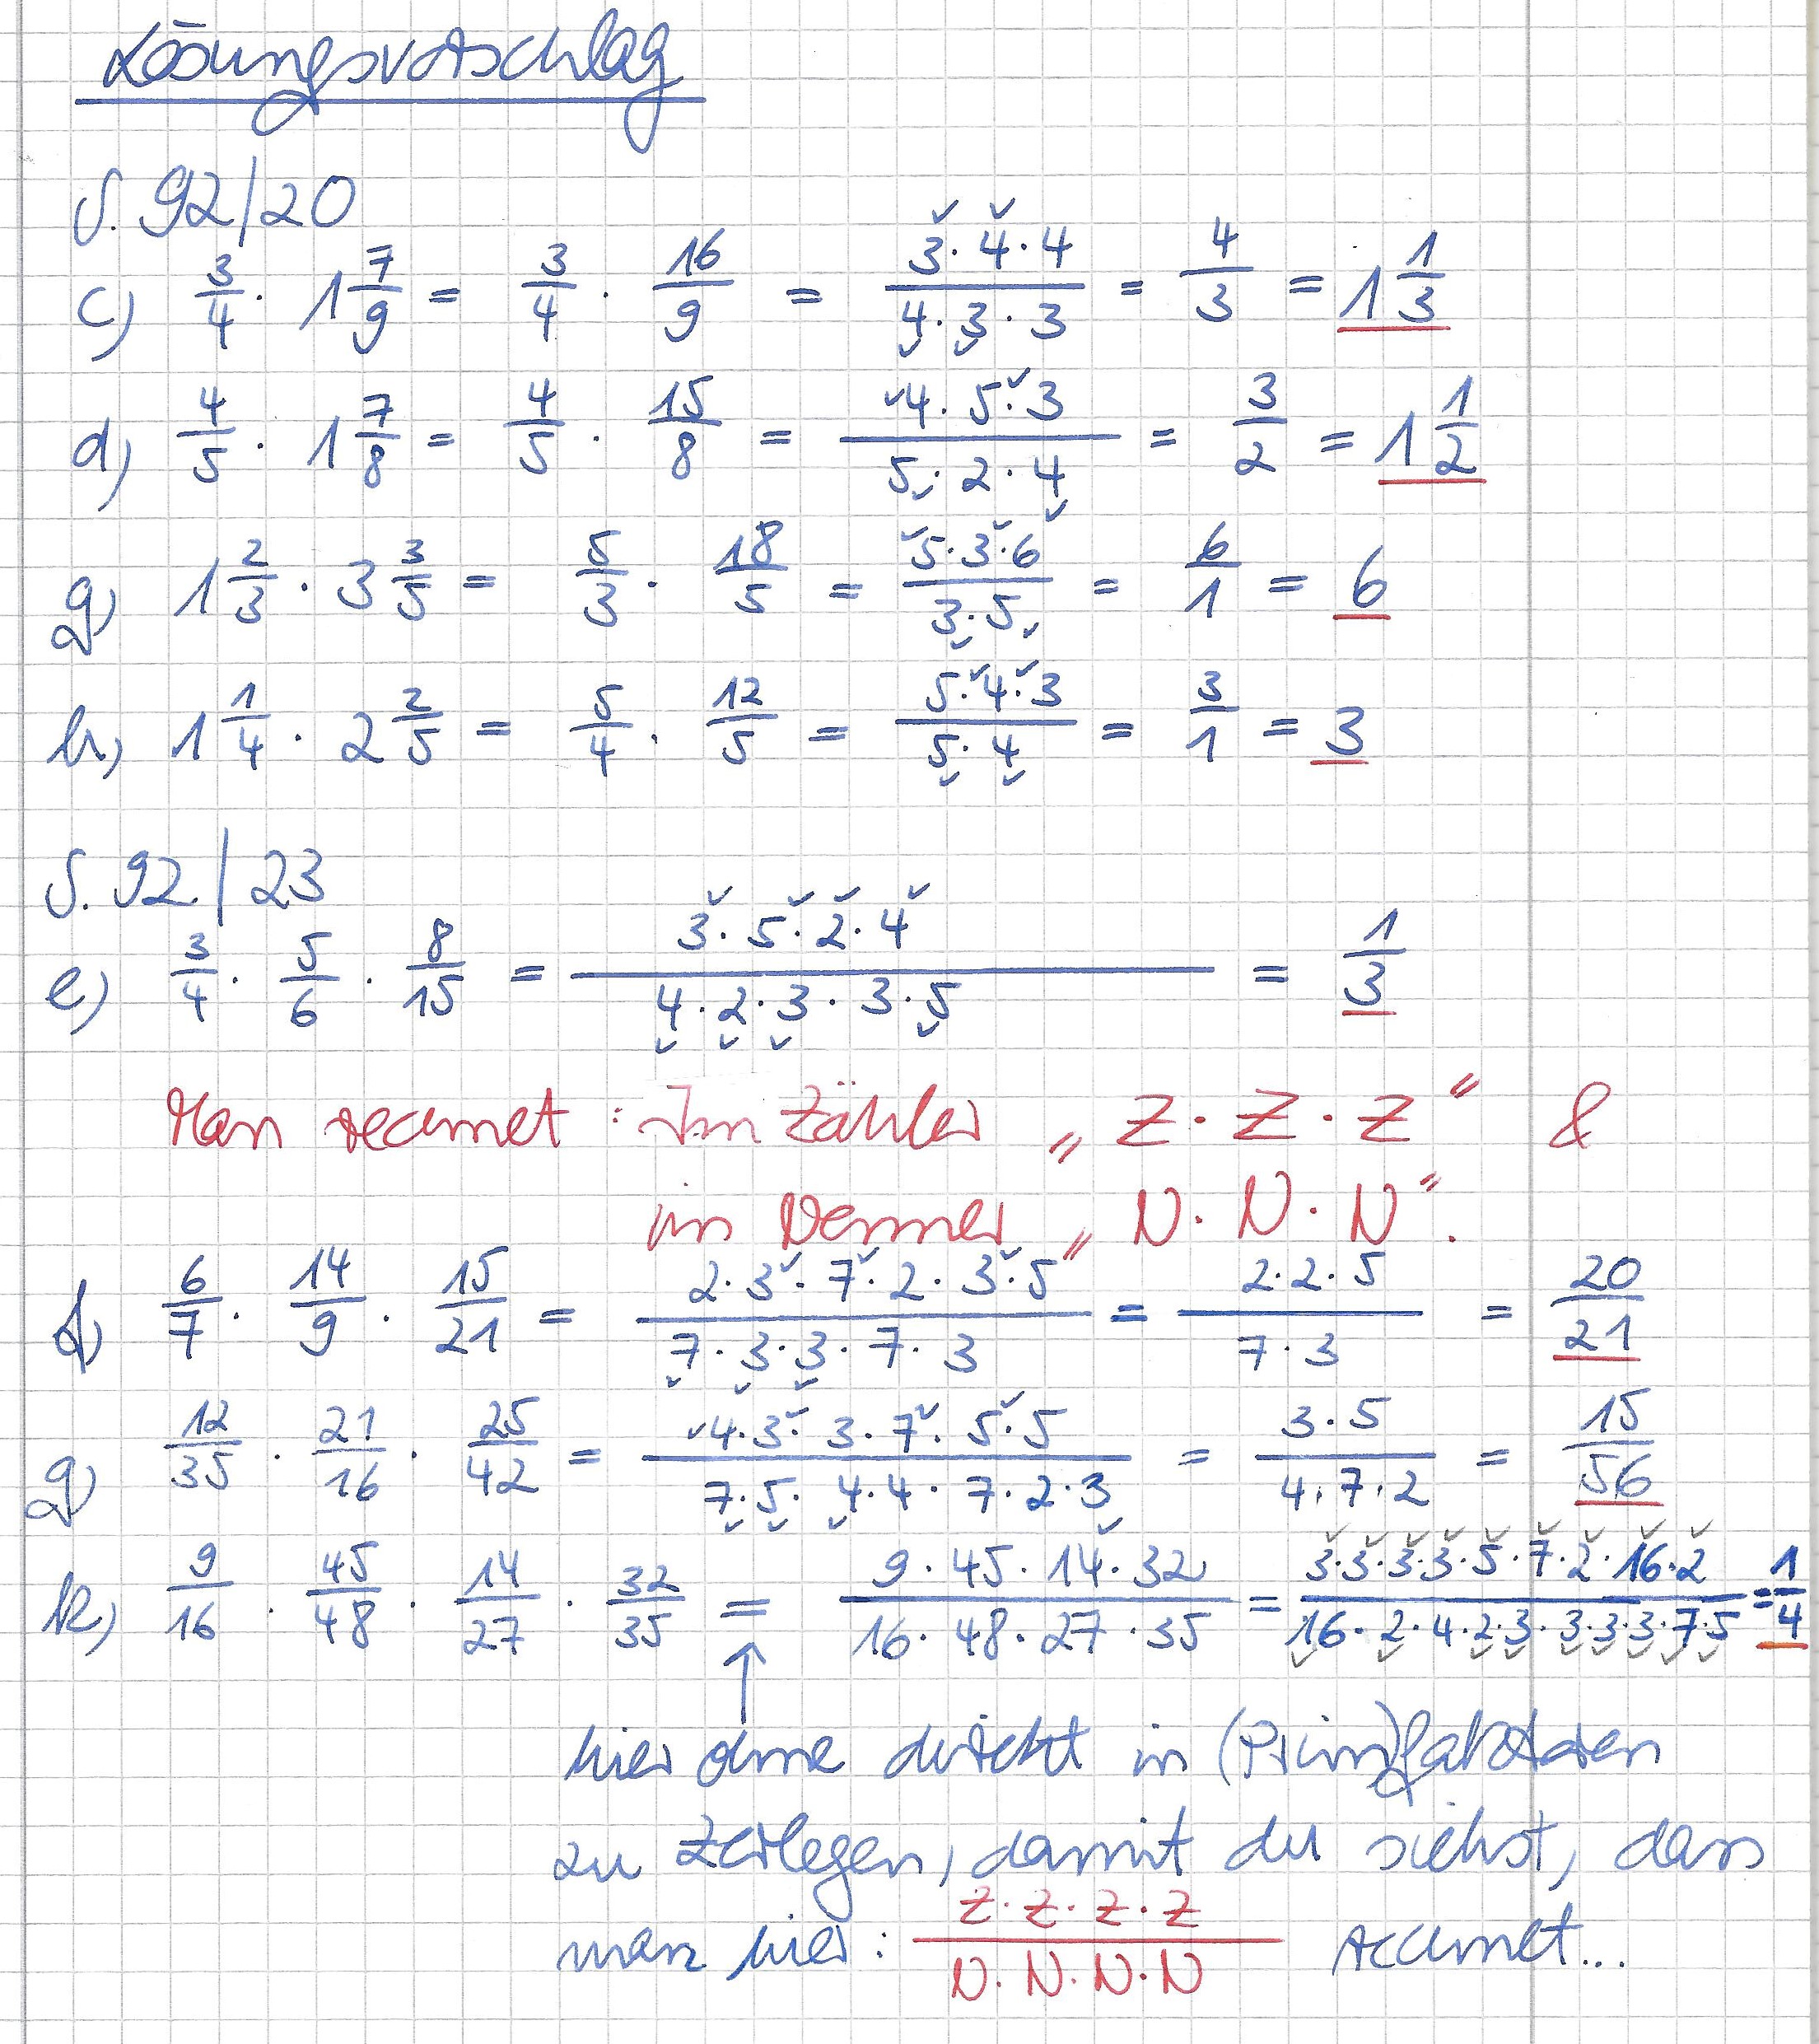 Lösungsvorschlag 92 Aufgabe 20 c, d, g, h und 23 e, f, g, k.jpg